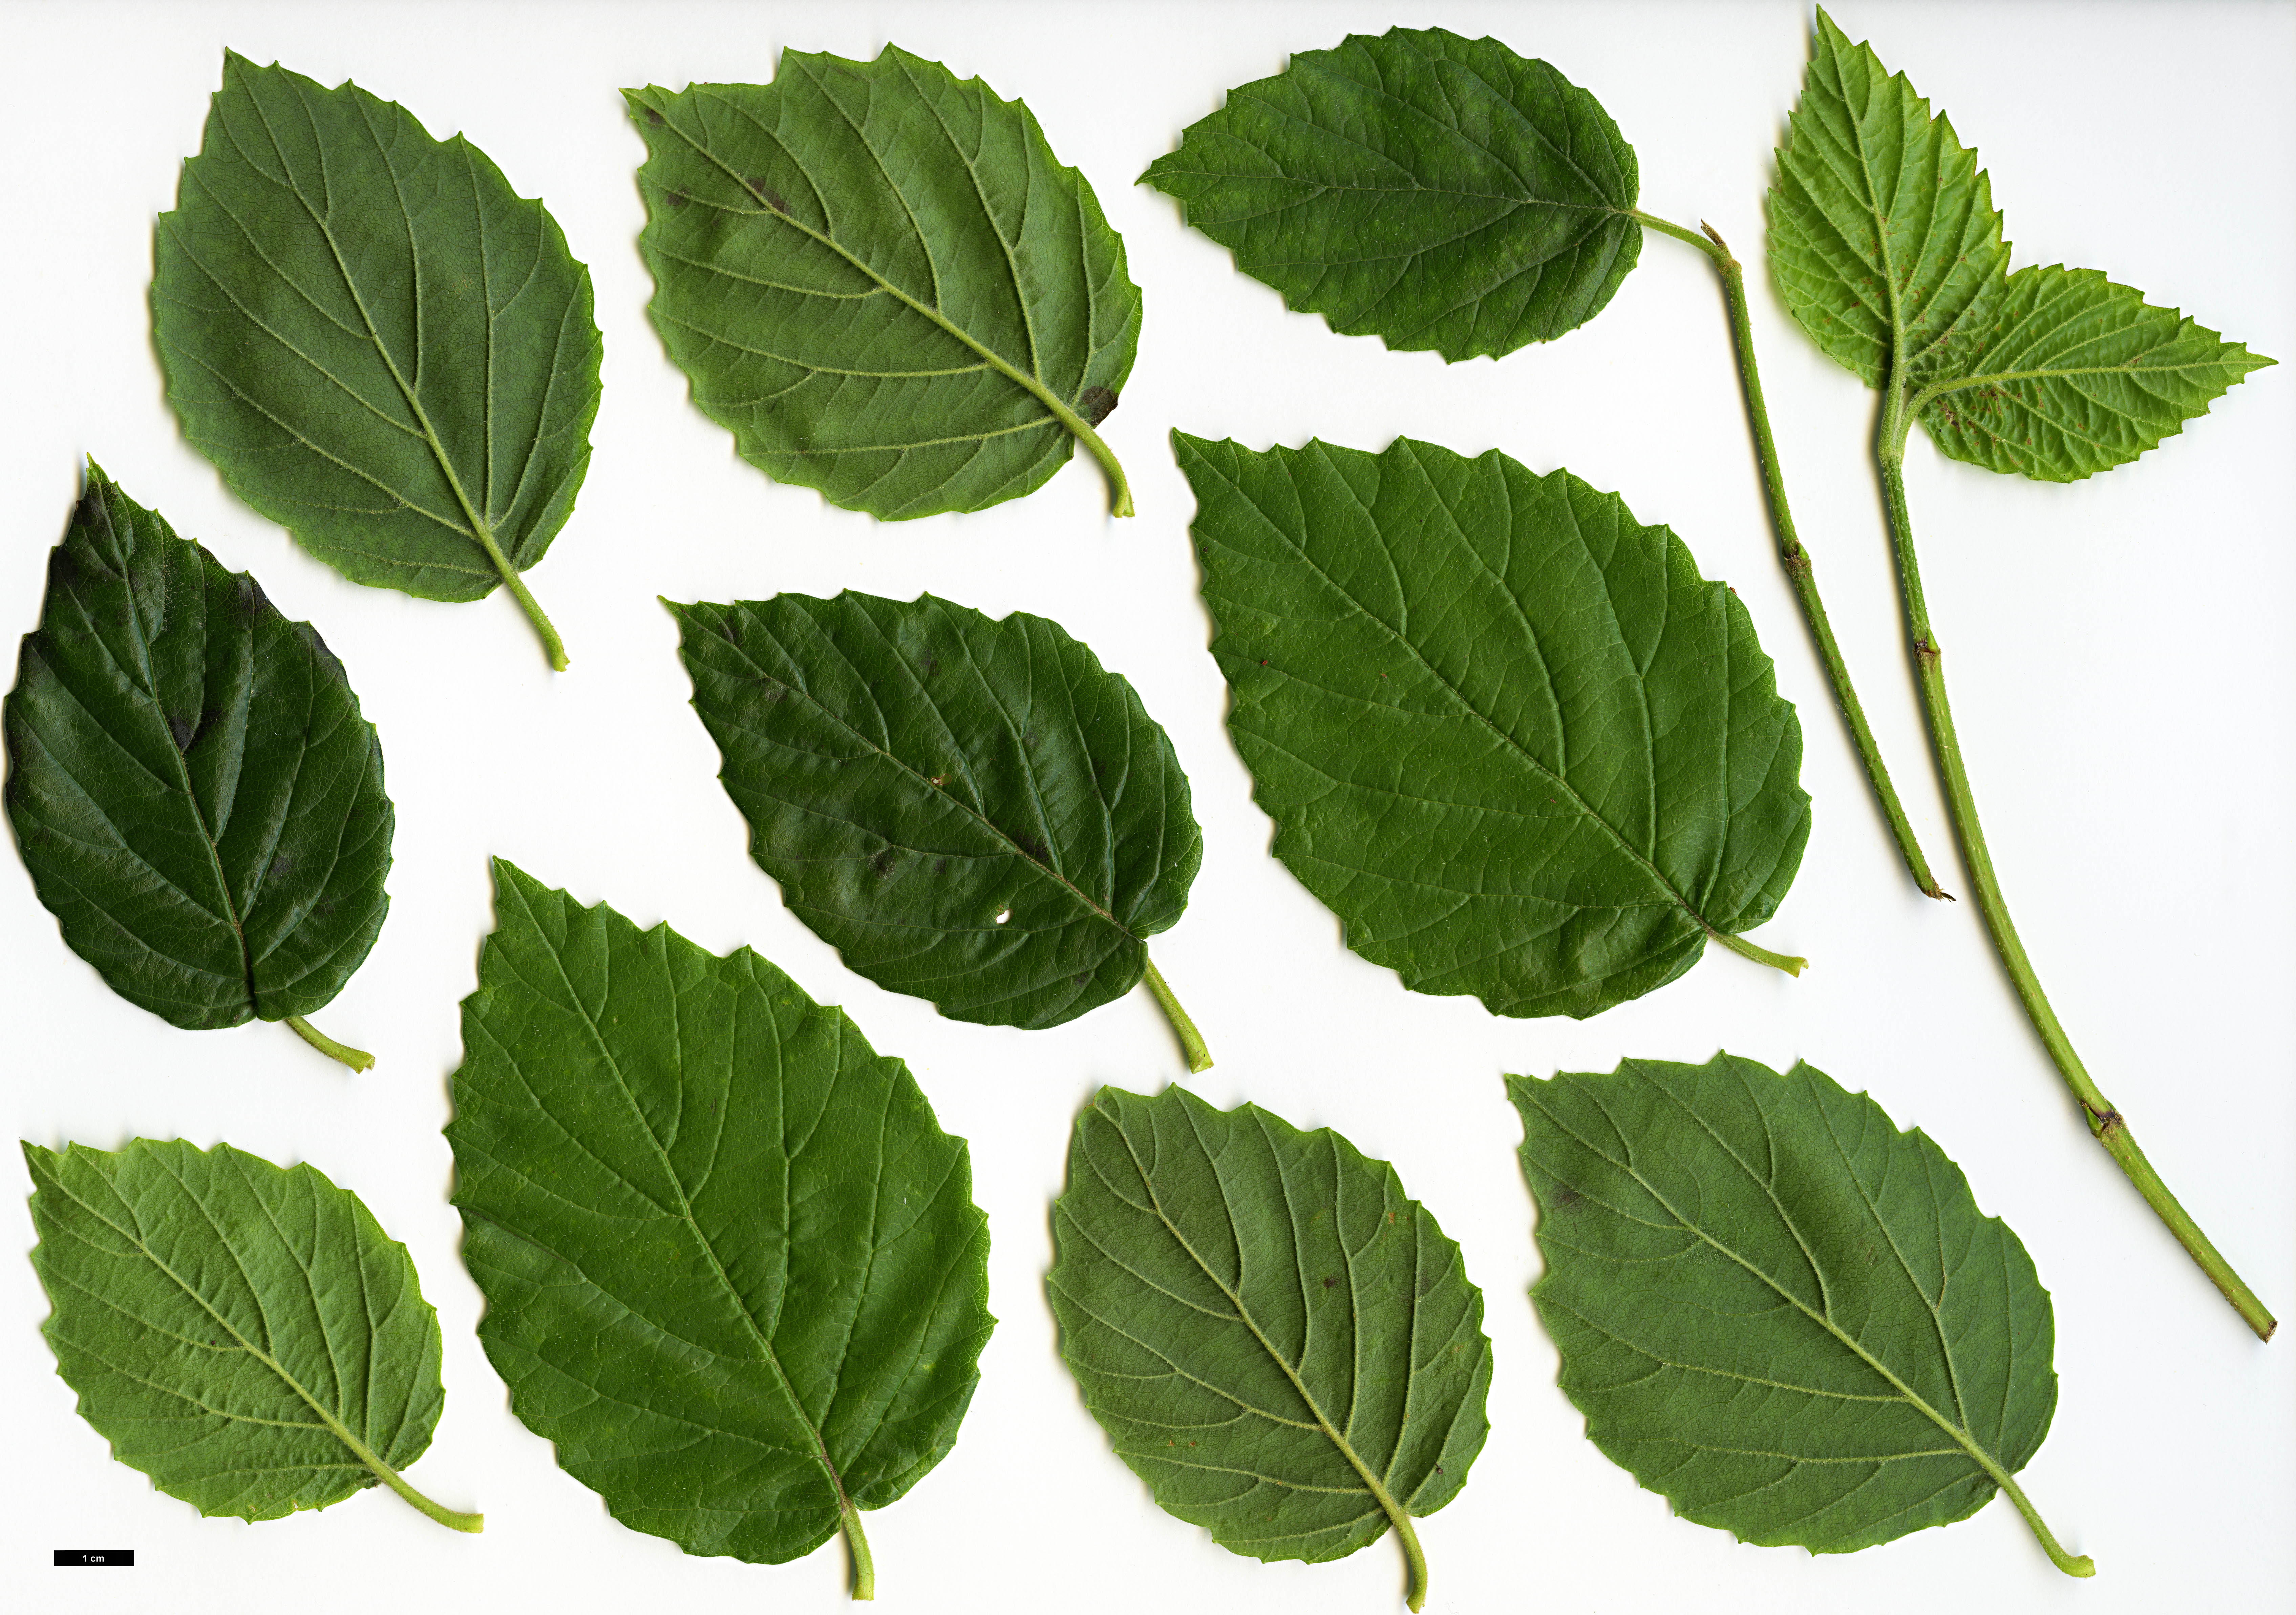 High resolution image: Family: Adoxaceae - Genus: Viburnum - Taxon: bracteatum - SpeciesSub: 'Emerald Lustre'